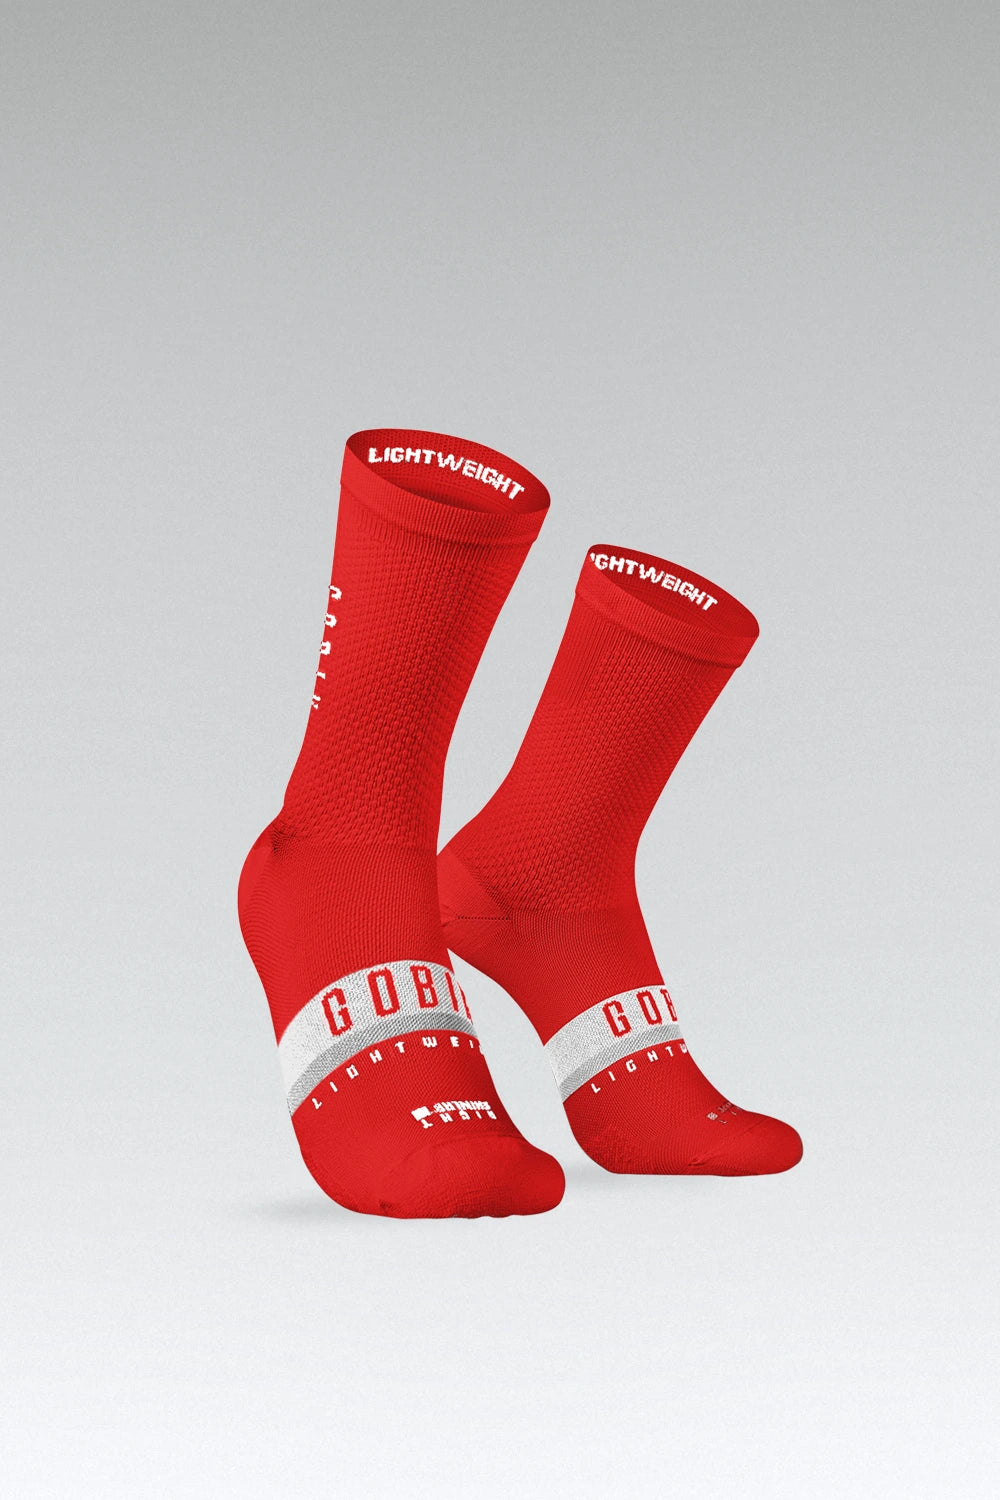 Calcetines Nike Squad rojos